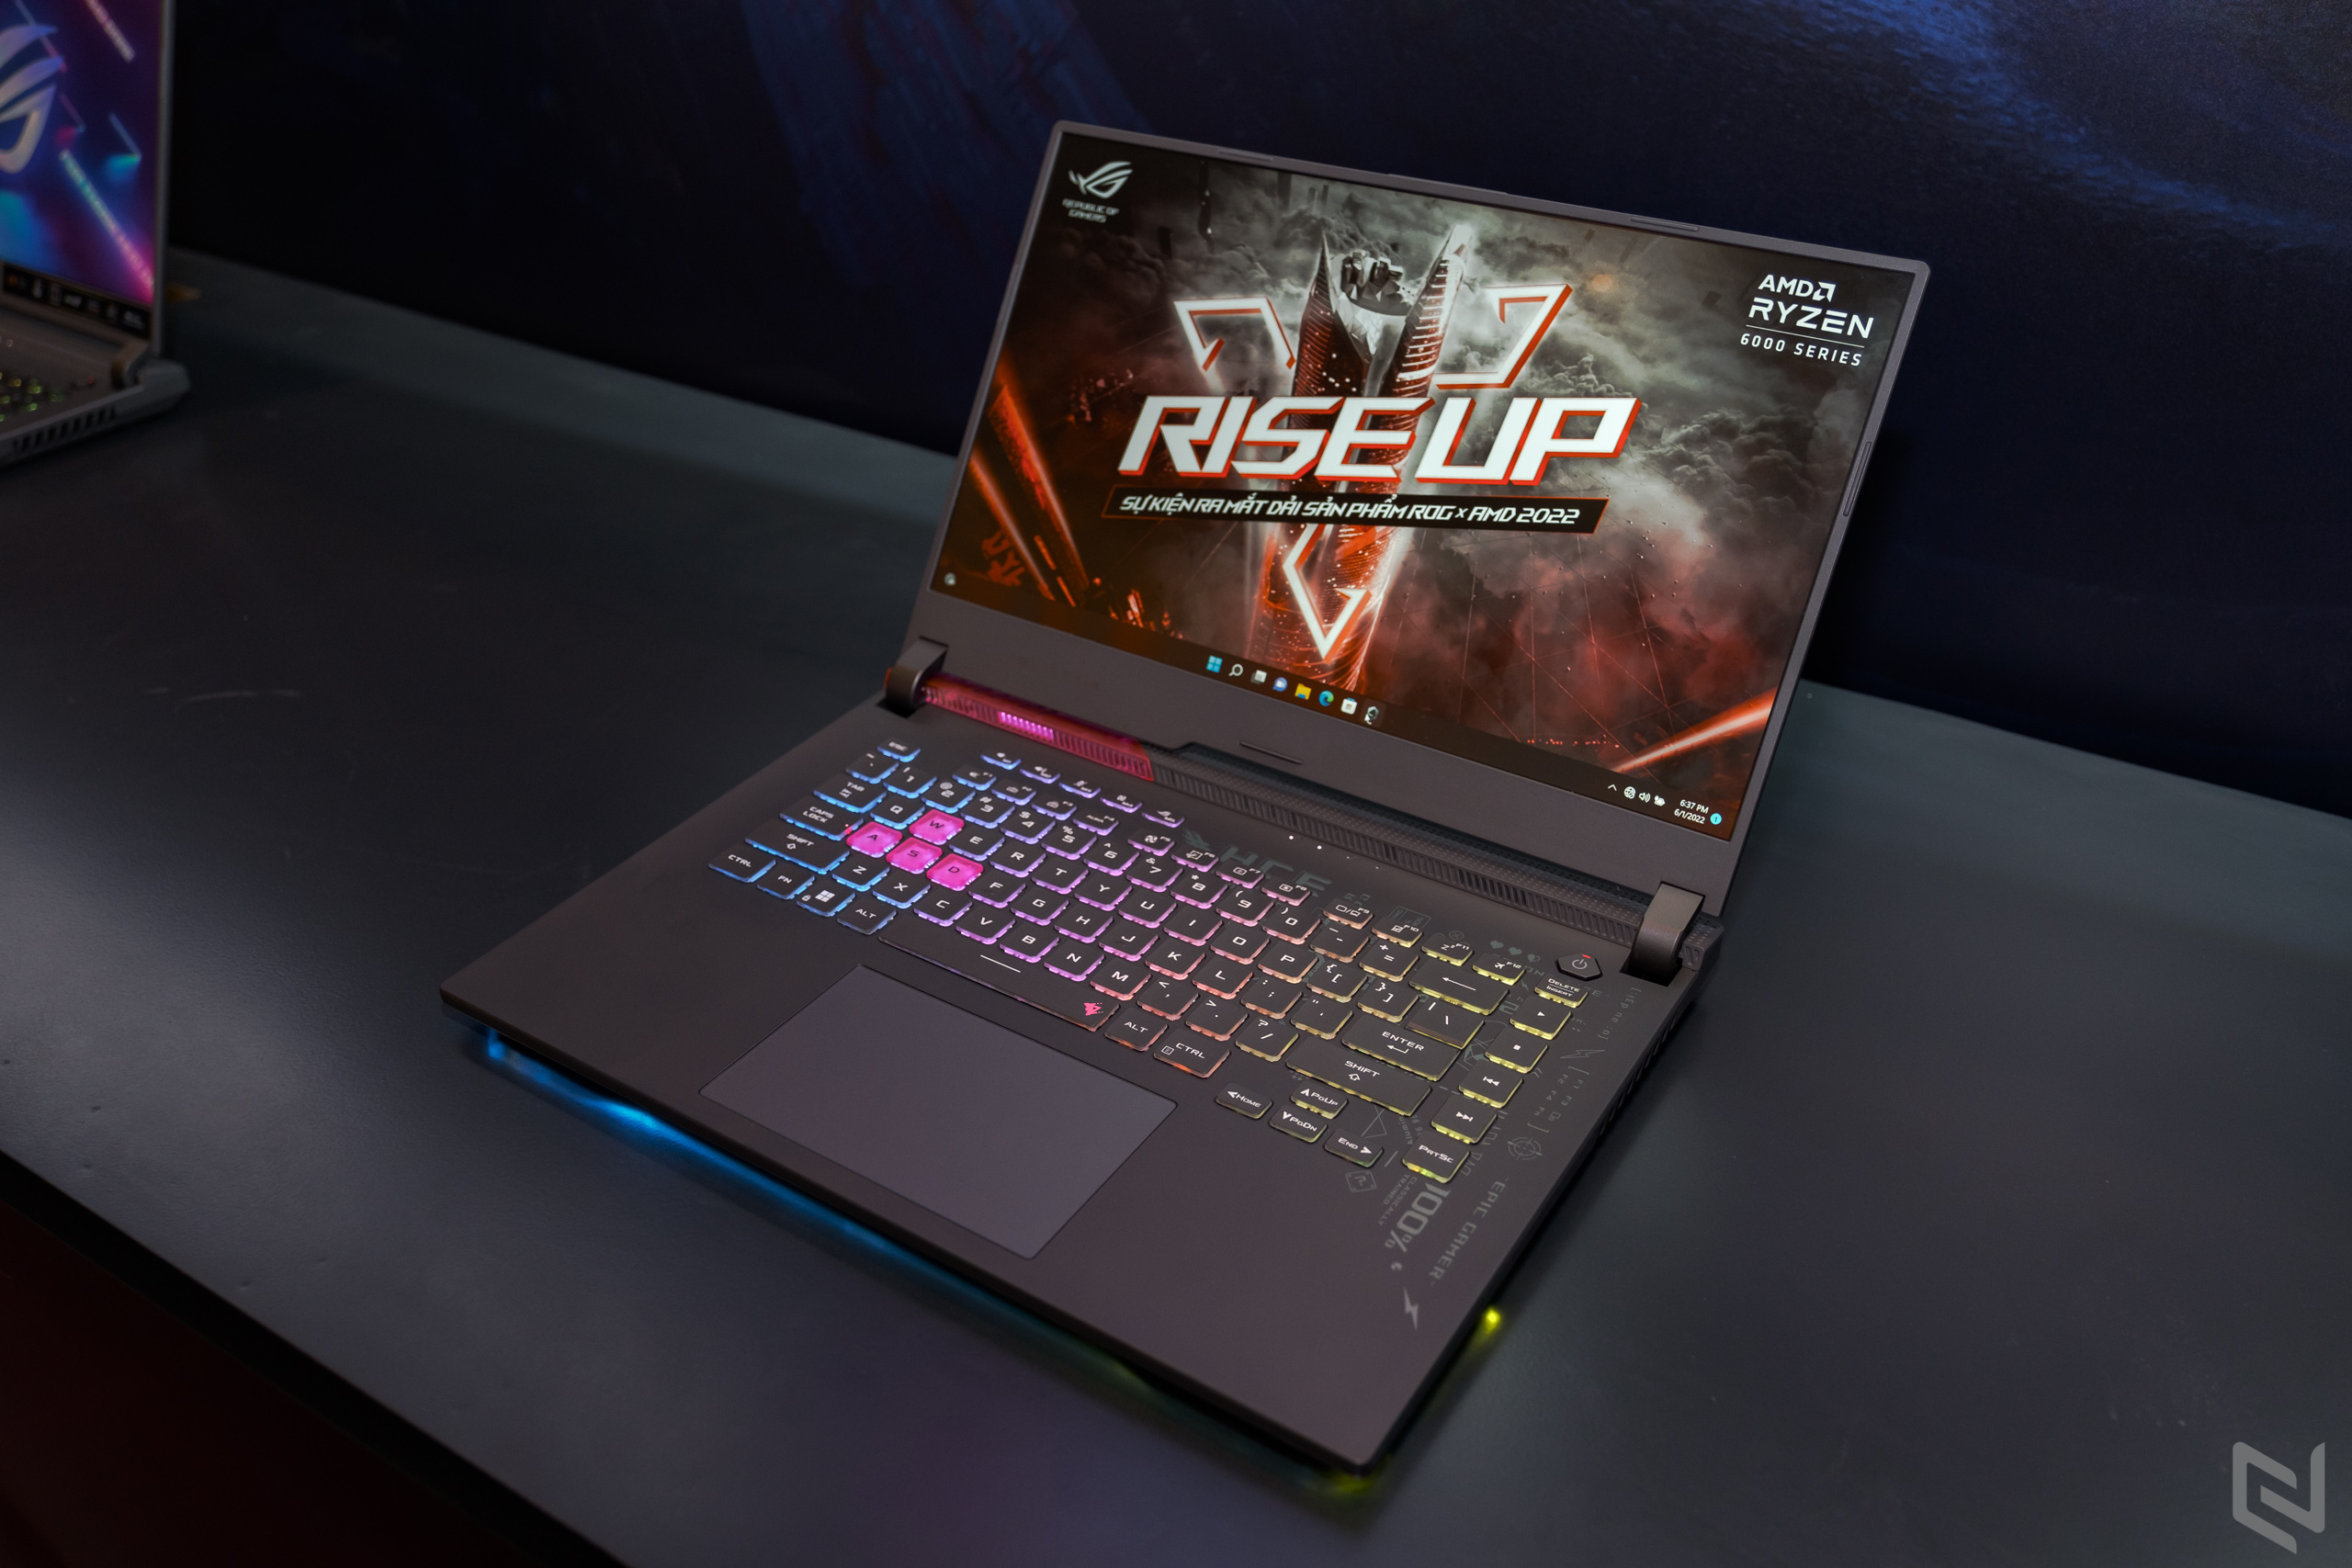 ASUS ROG nâng tầm trải nghiệm Gaming với loạt Laptop mới chạy AMD Ryzen 6000 Series